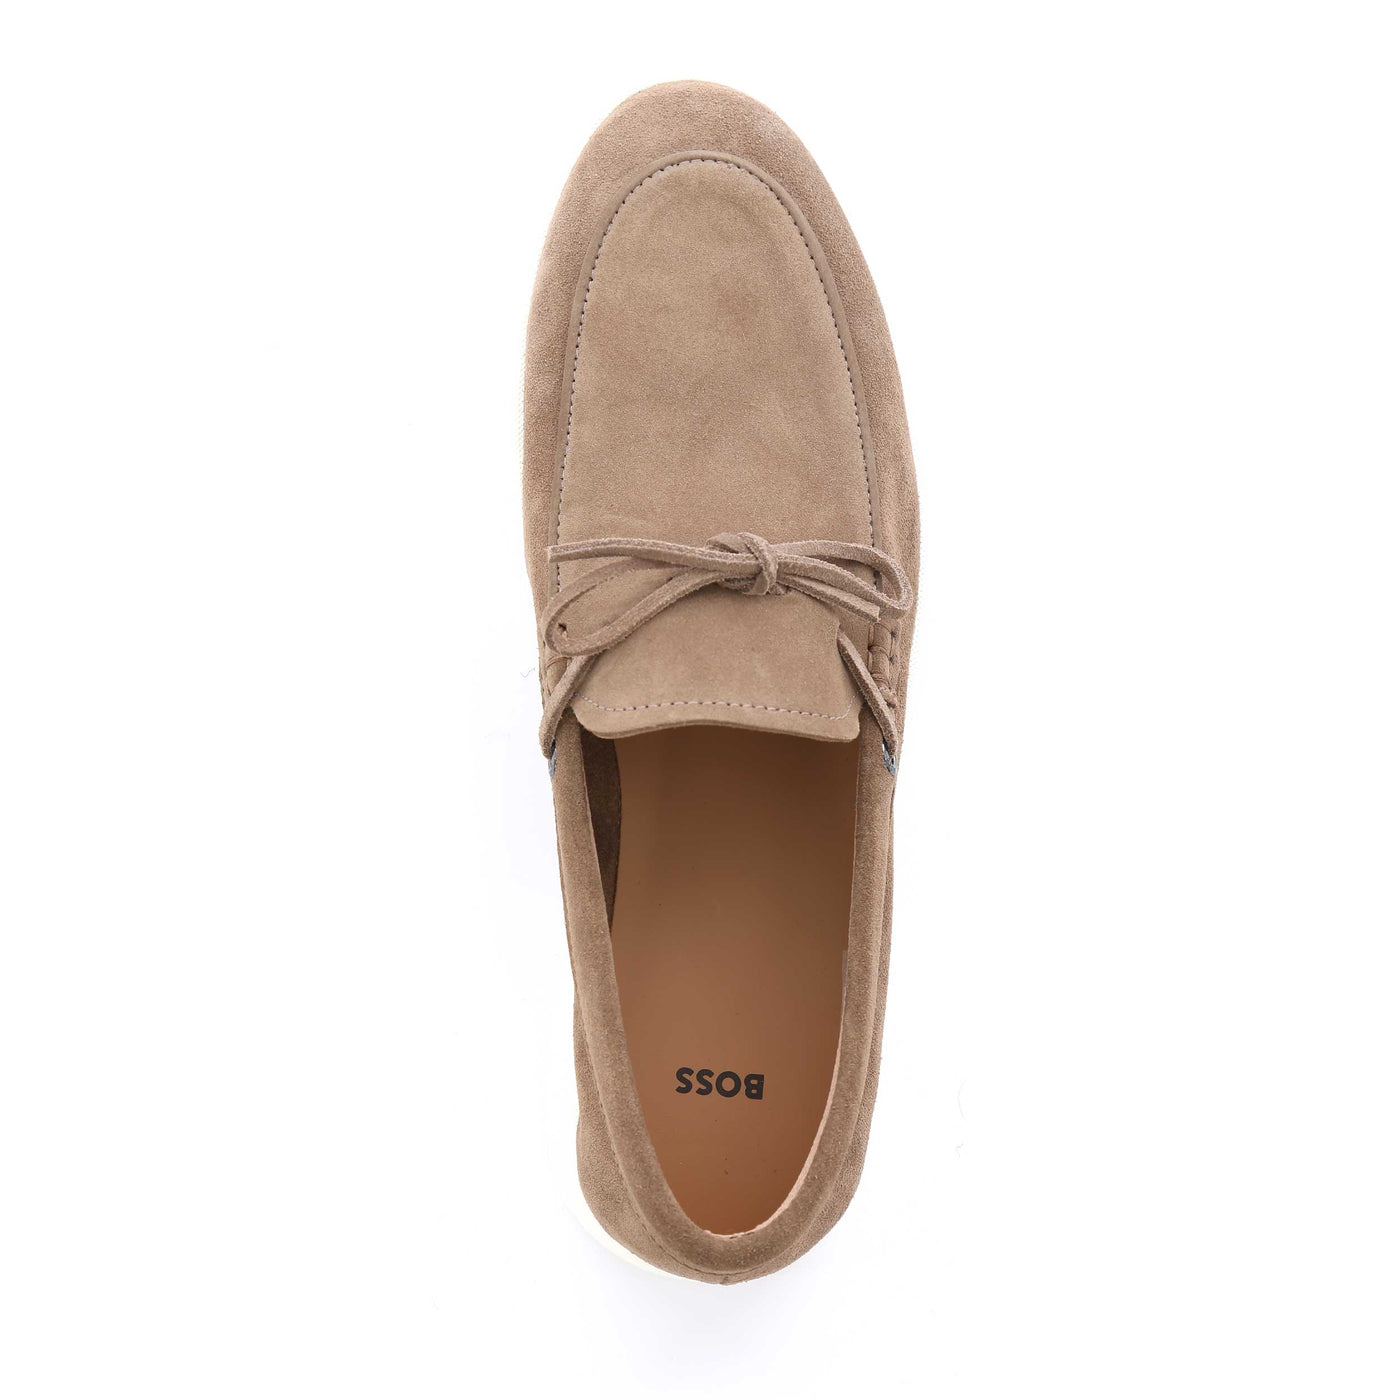 BOSS Sienne Mocc sdrb Shoe in Medium Brown